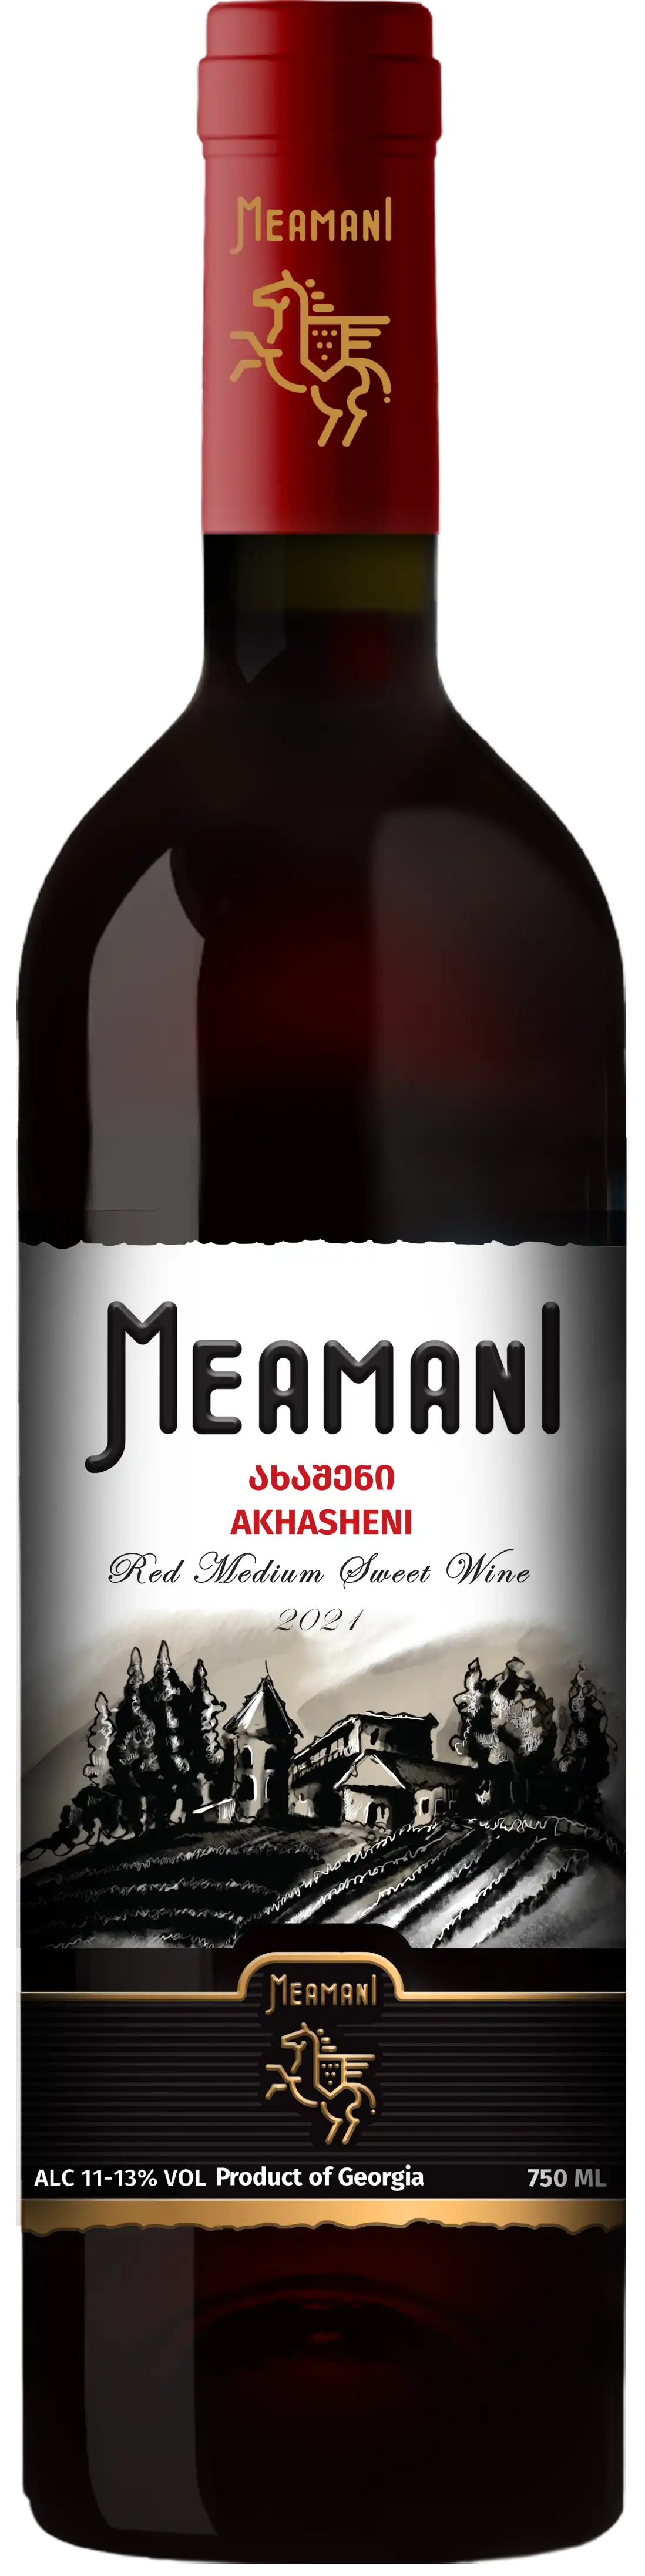 Вино Ахашени красное полусладкое Меамани